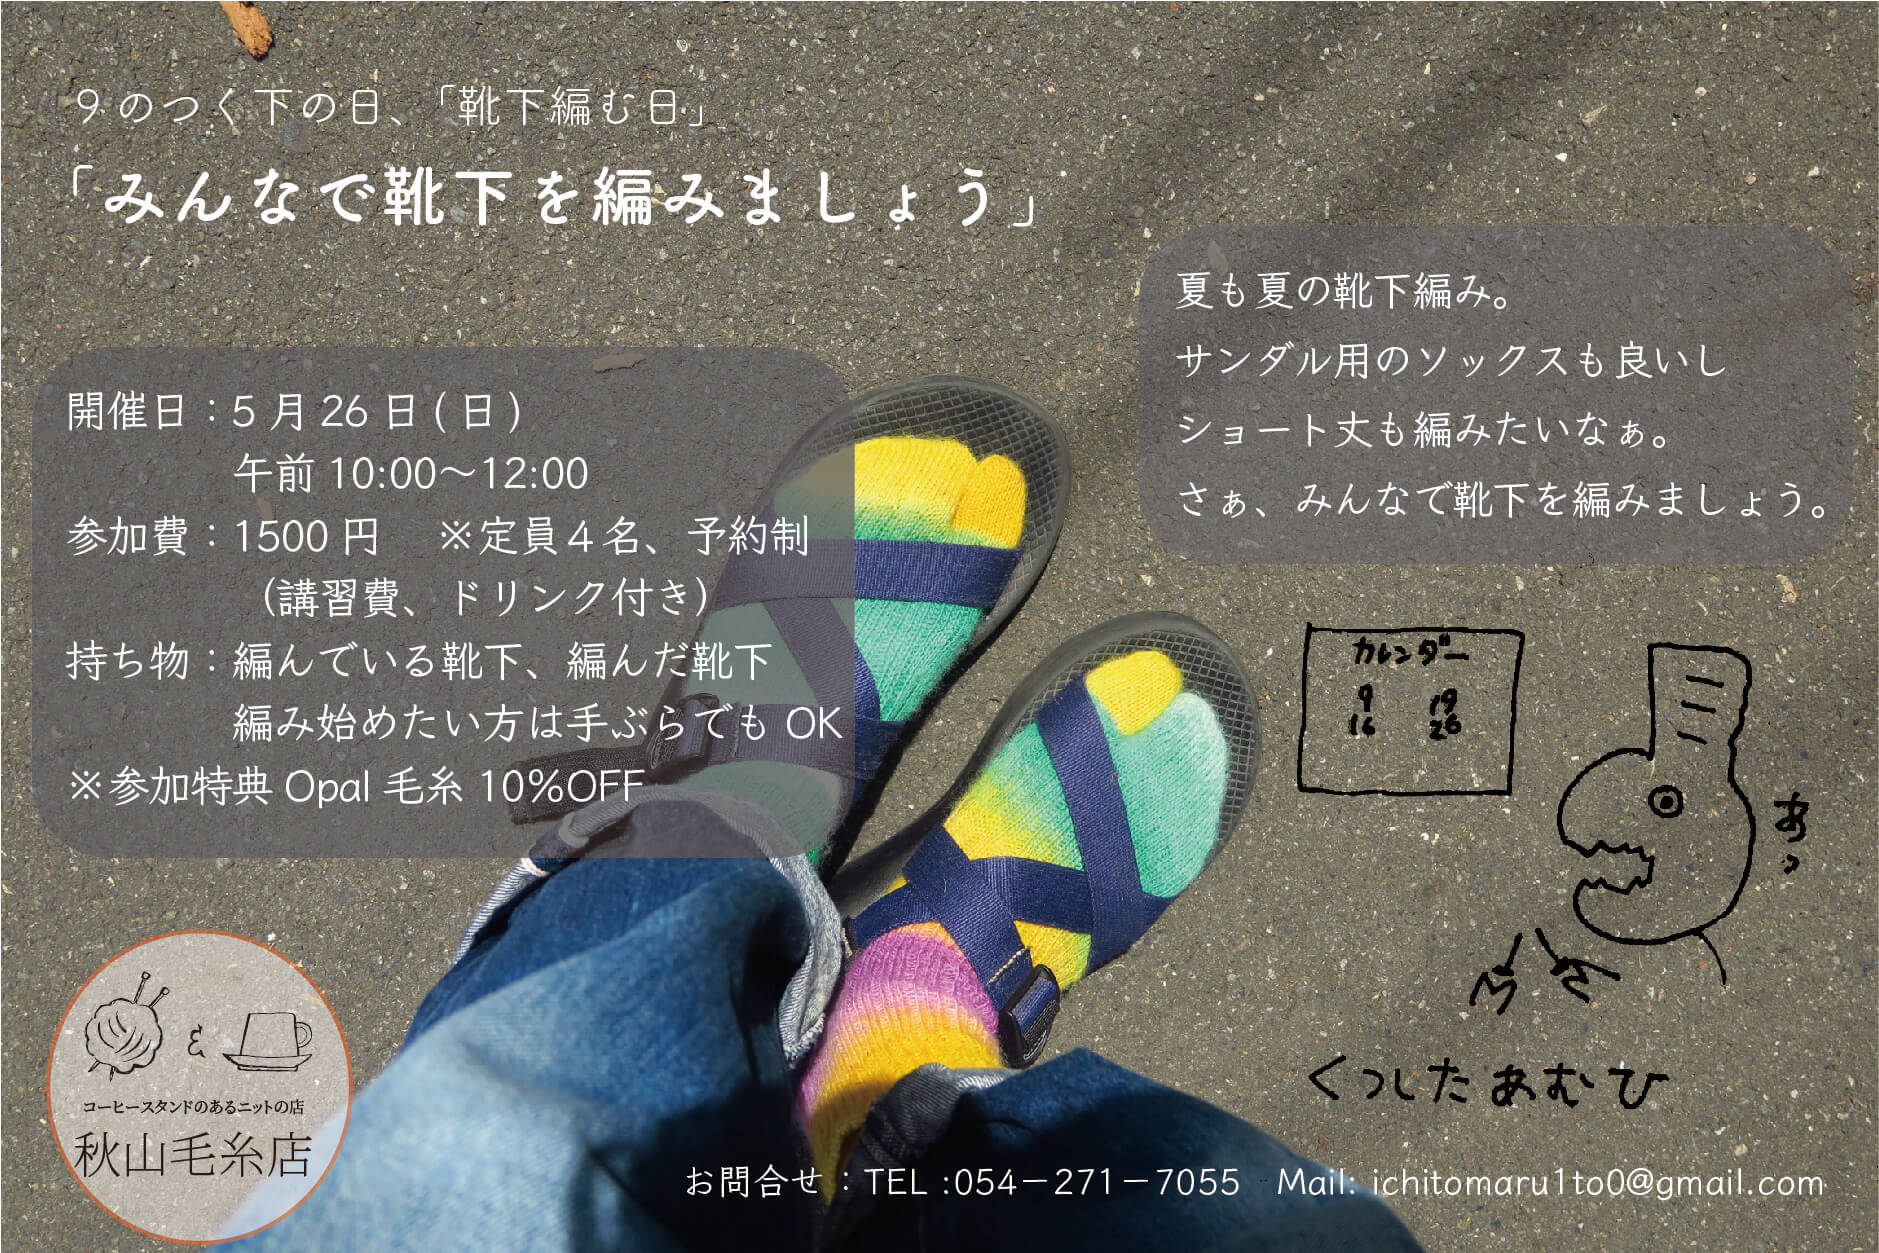 【イベント終了】5月26日(金) 9のつく下の日の「みんなで靴下編みましょう」の会